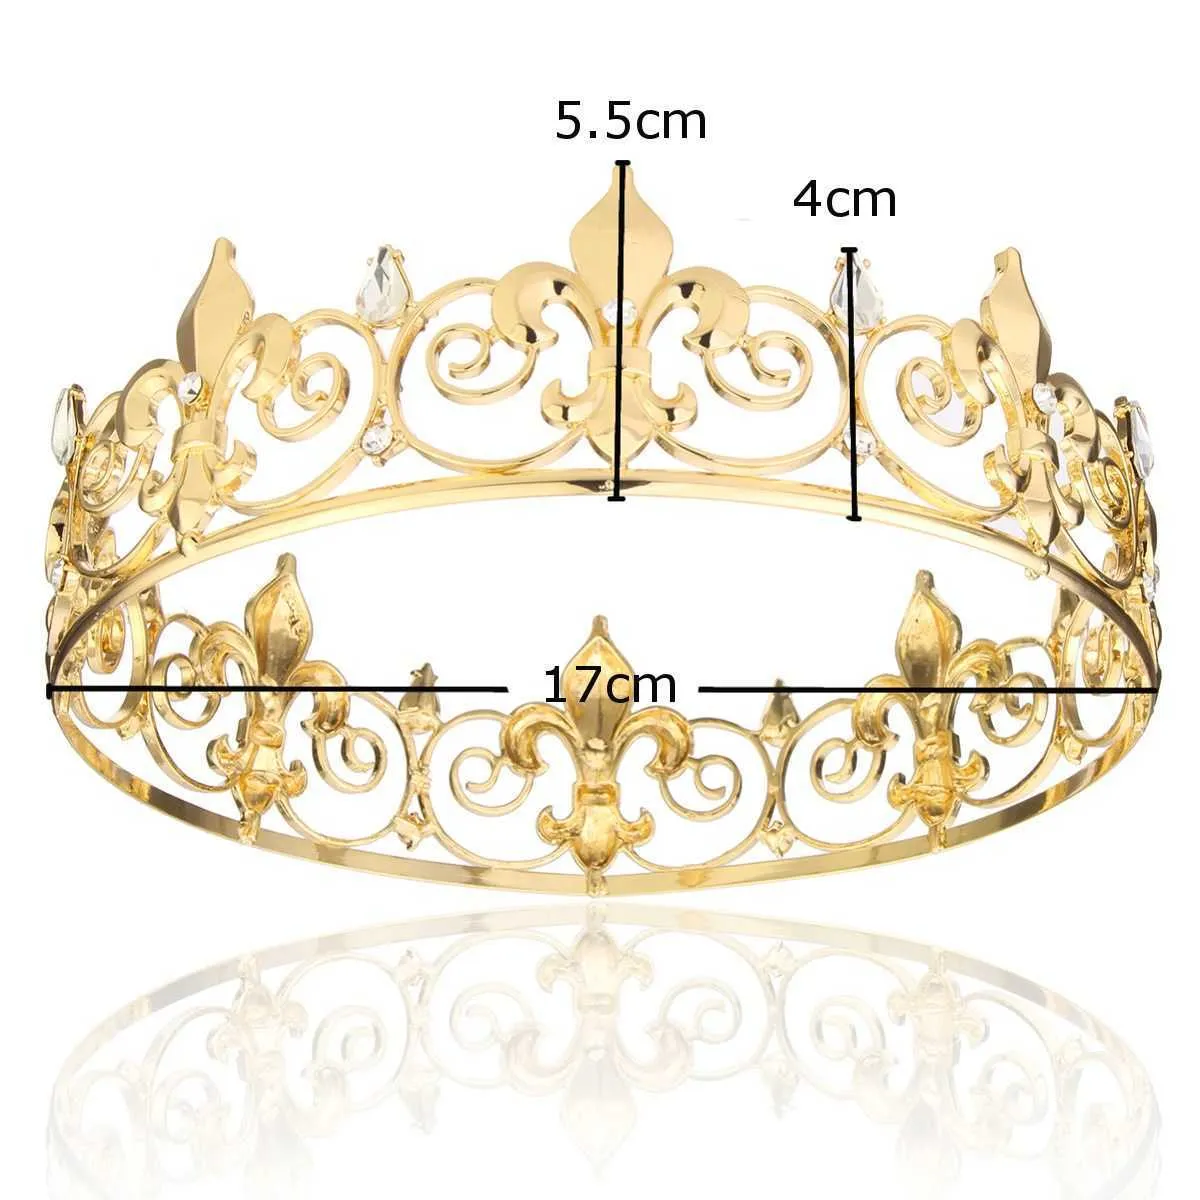 Ganzkreis Gold Prom Accessoires König Men039s Crown Round Imperial Tiara 2106162258353